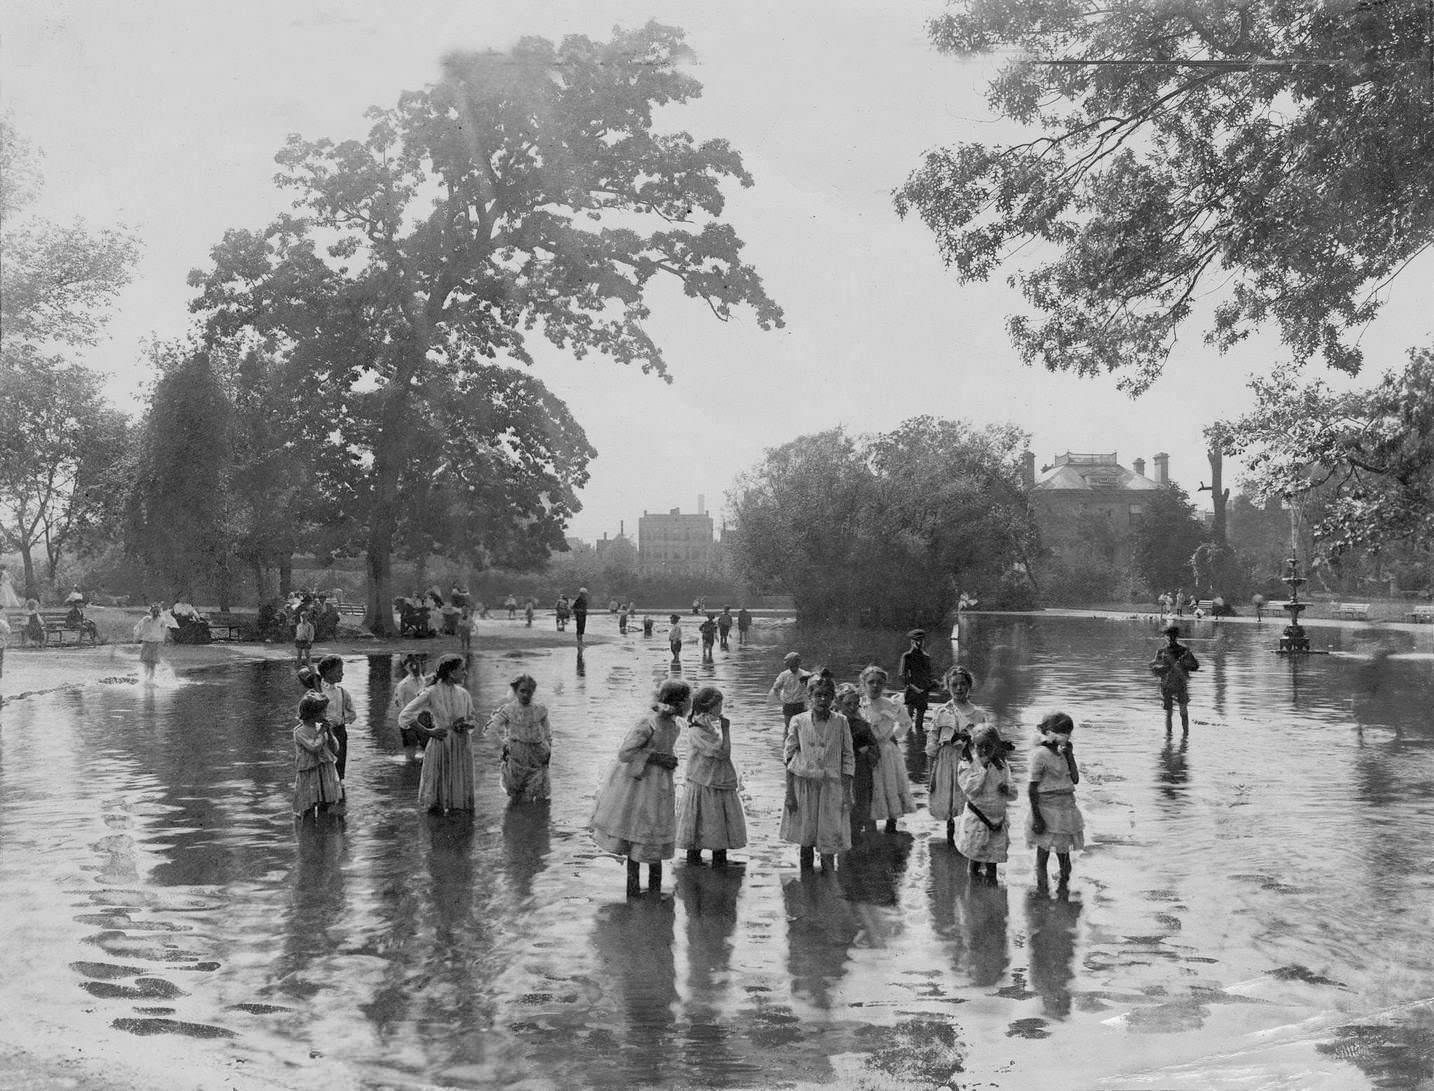 Children splashing in a pond in Lunapark in Chicago, 1910s